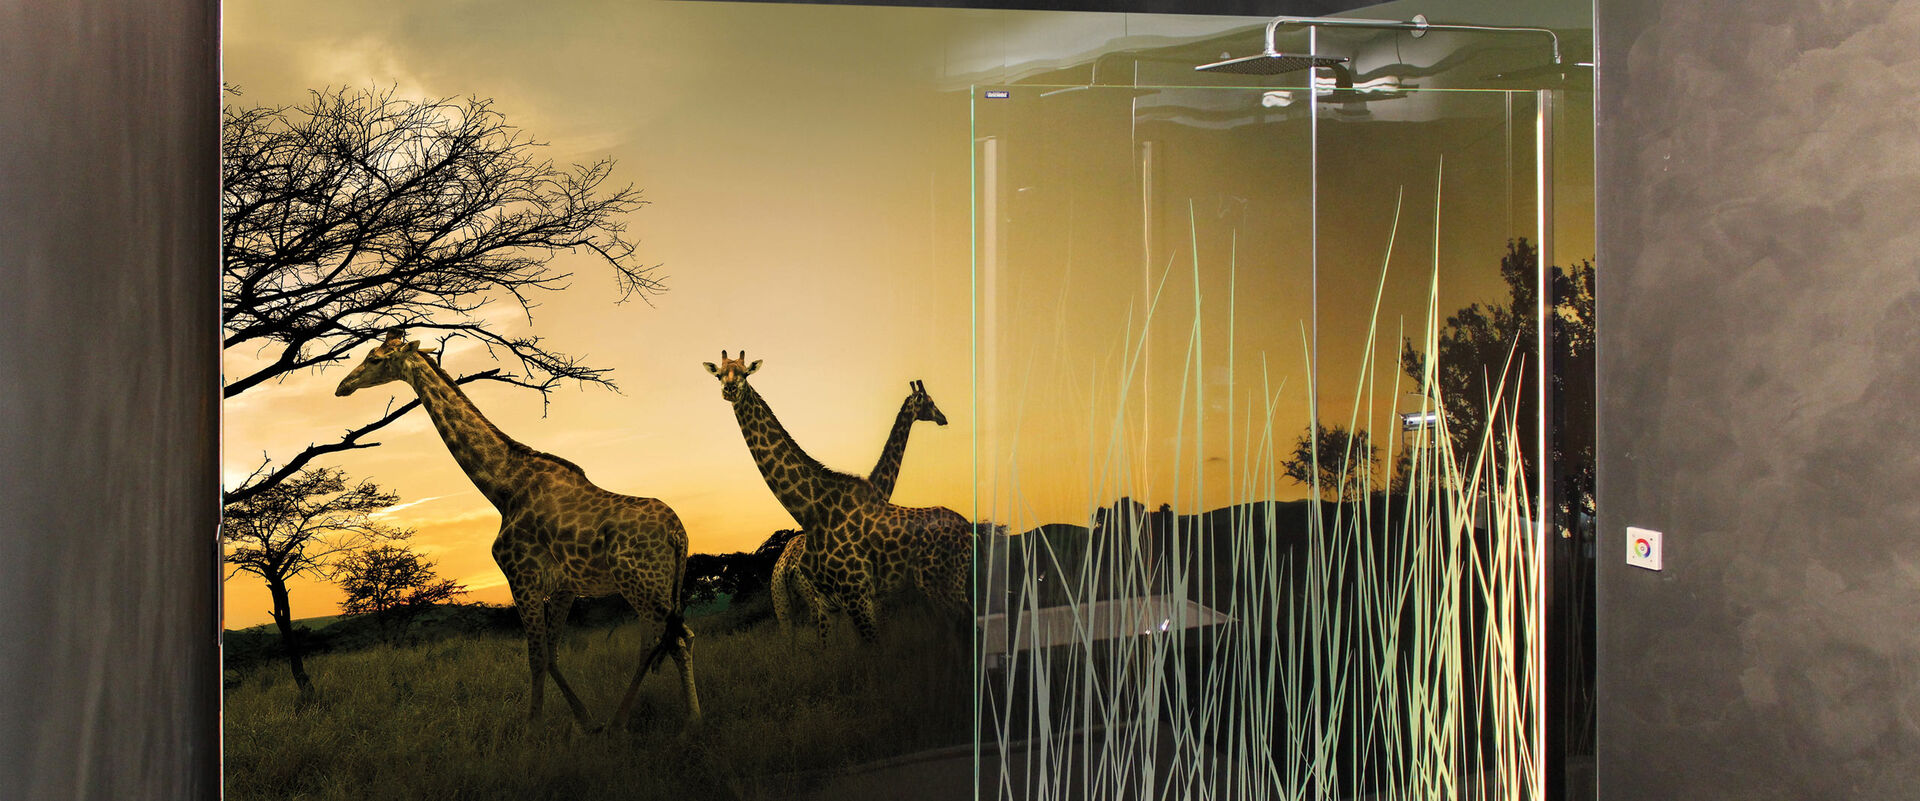 Dusche, in der eine Duscholux PanElle Enlight Wandverkleidung montiert ist. Die Wandverkleidung zeigt Giraffen und ist beleuchtet.